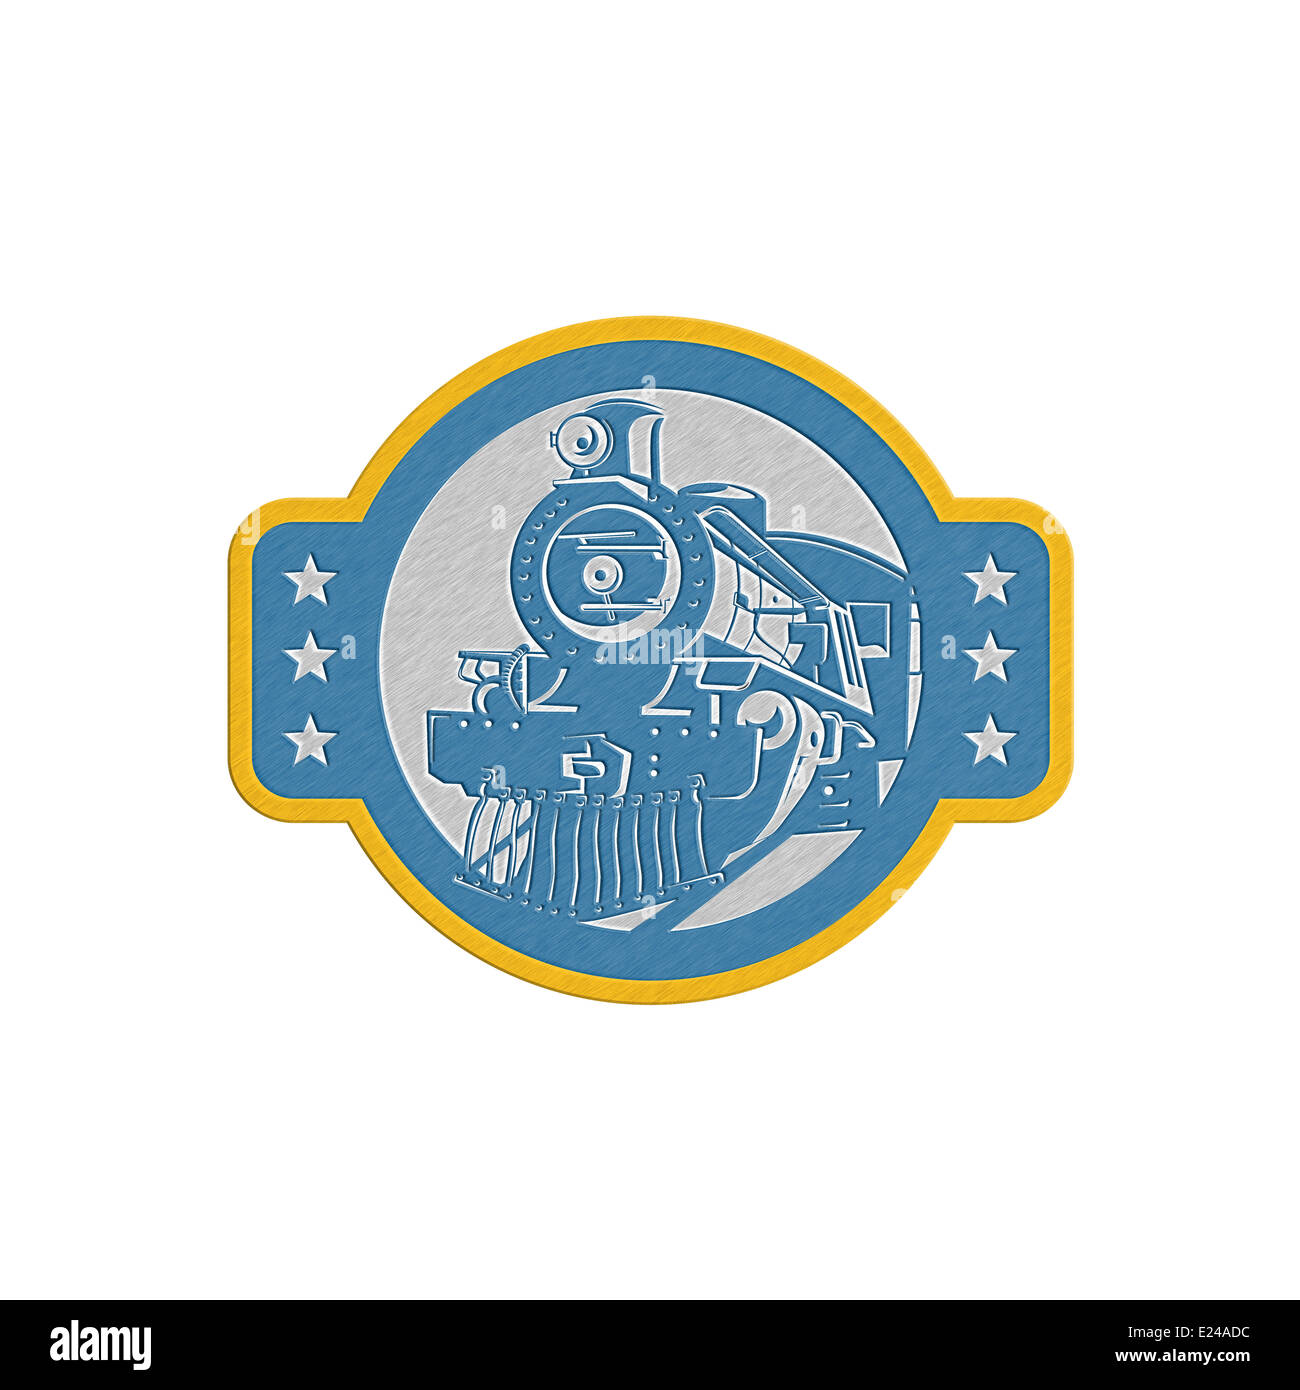 Illustration de style métallique d'un train à vapeur locomotive vue de l'avant ensemble à l'intérieur du cercle fait en style retro isolées sur fond blanc. Banque D'Images